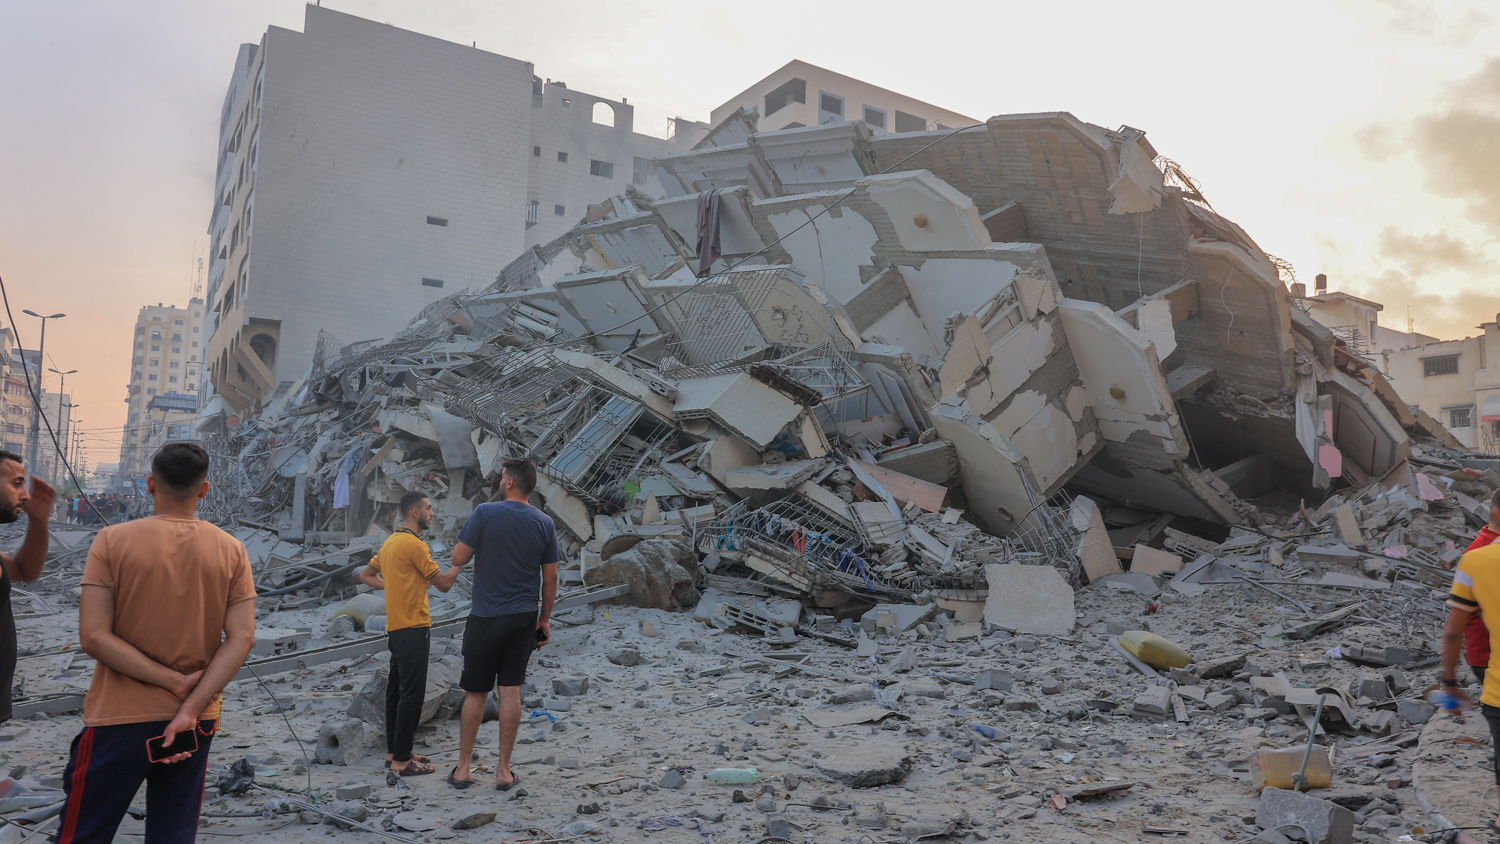 Ruined buildings in Gaza. 